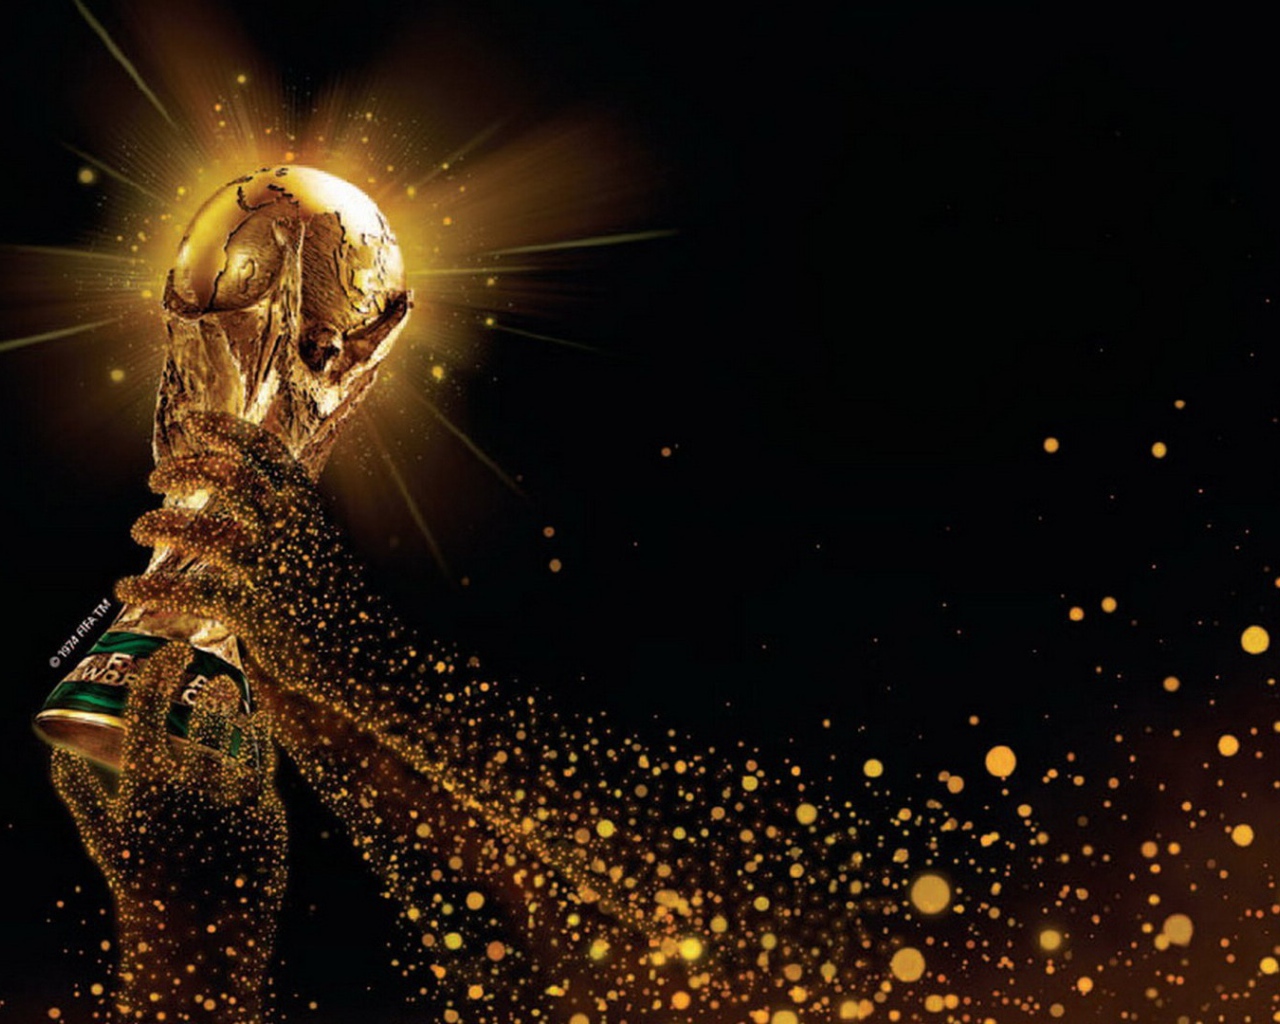 Кубок Чемпионата Мира по футболу в Бразилии 2014 в руках